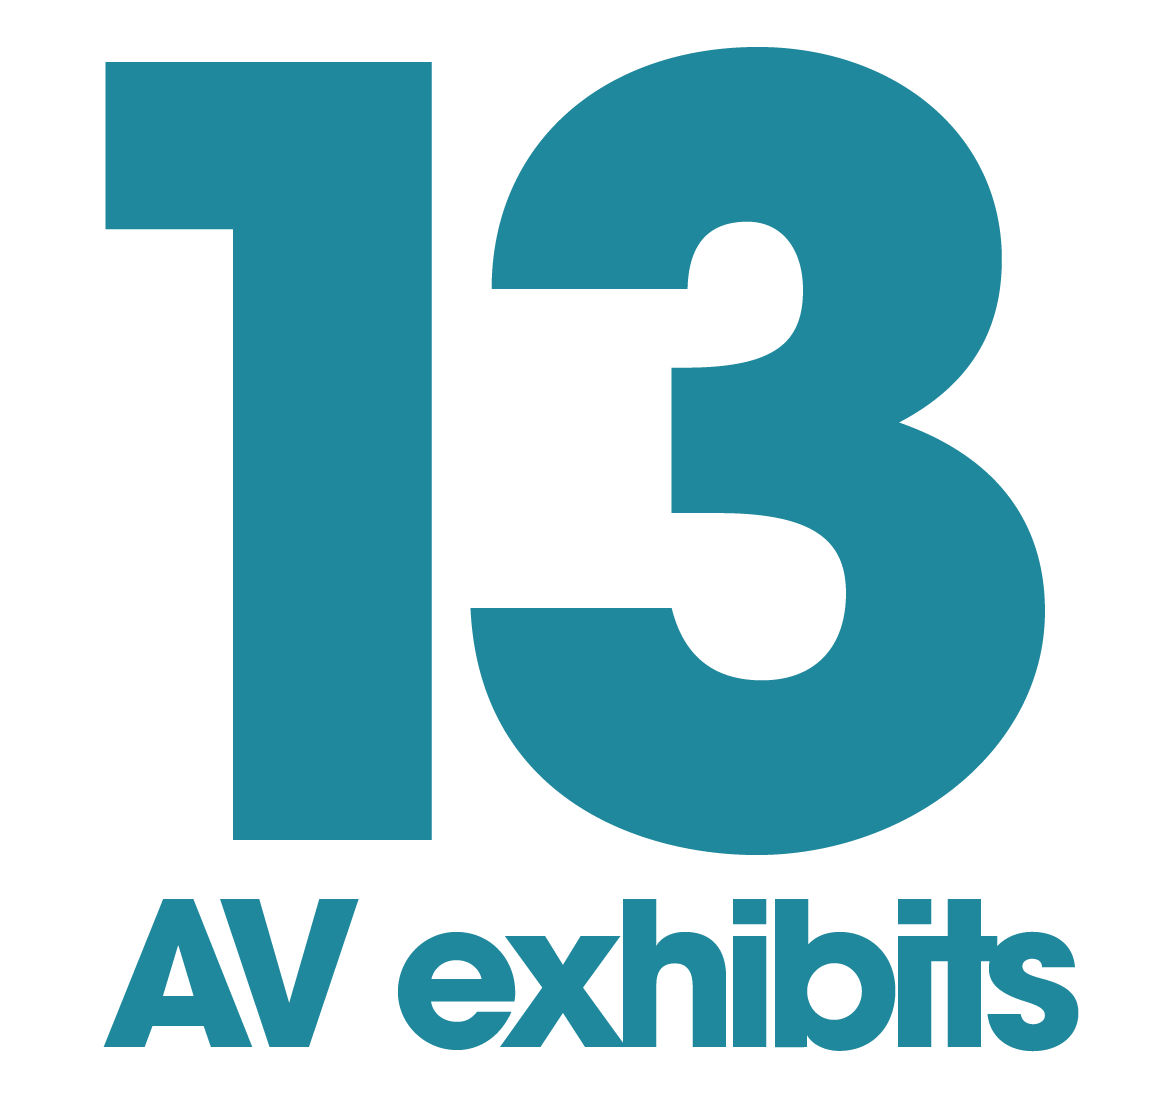 13 AV exhibits